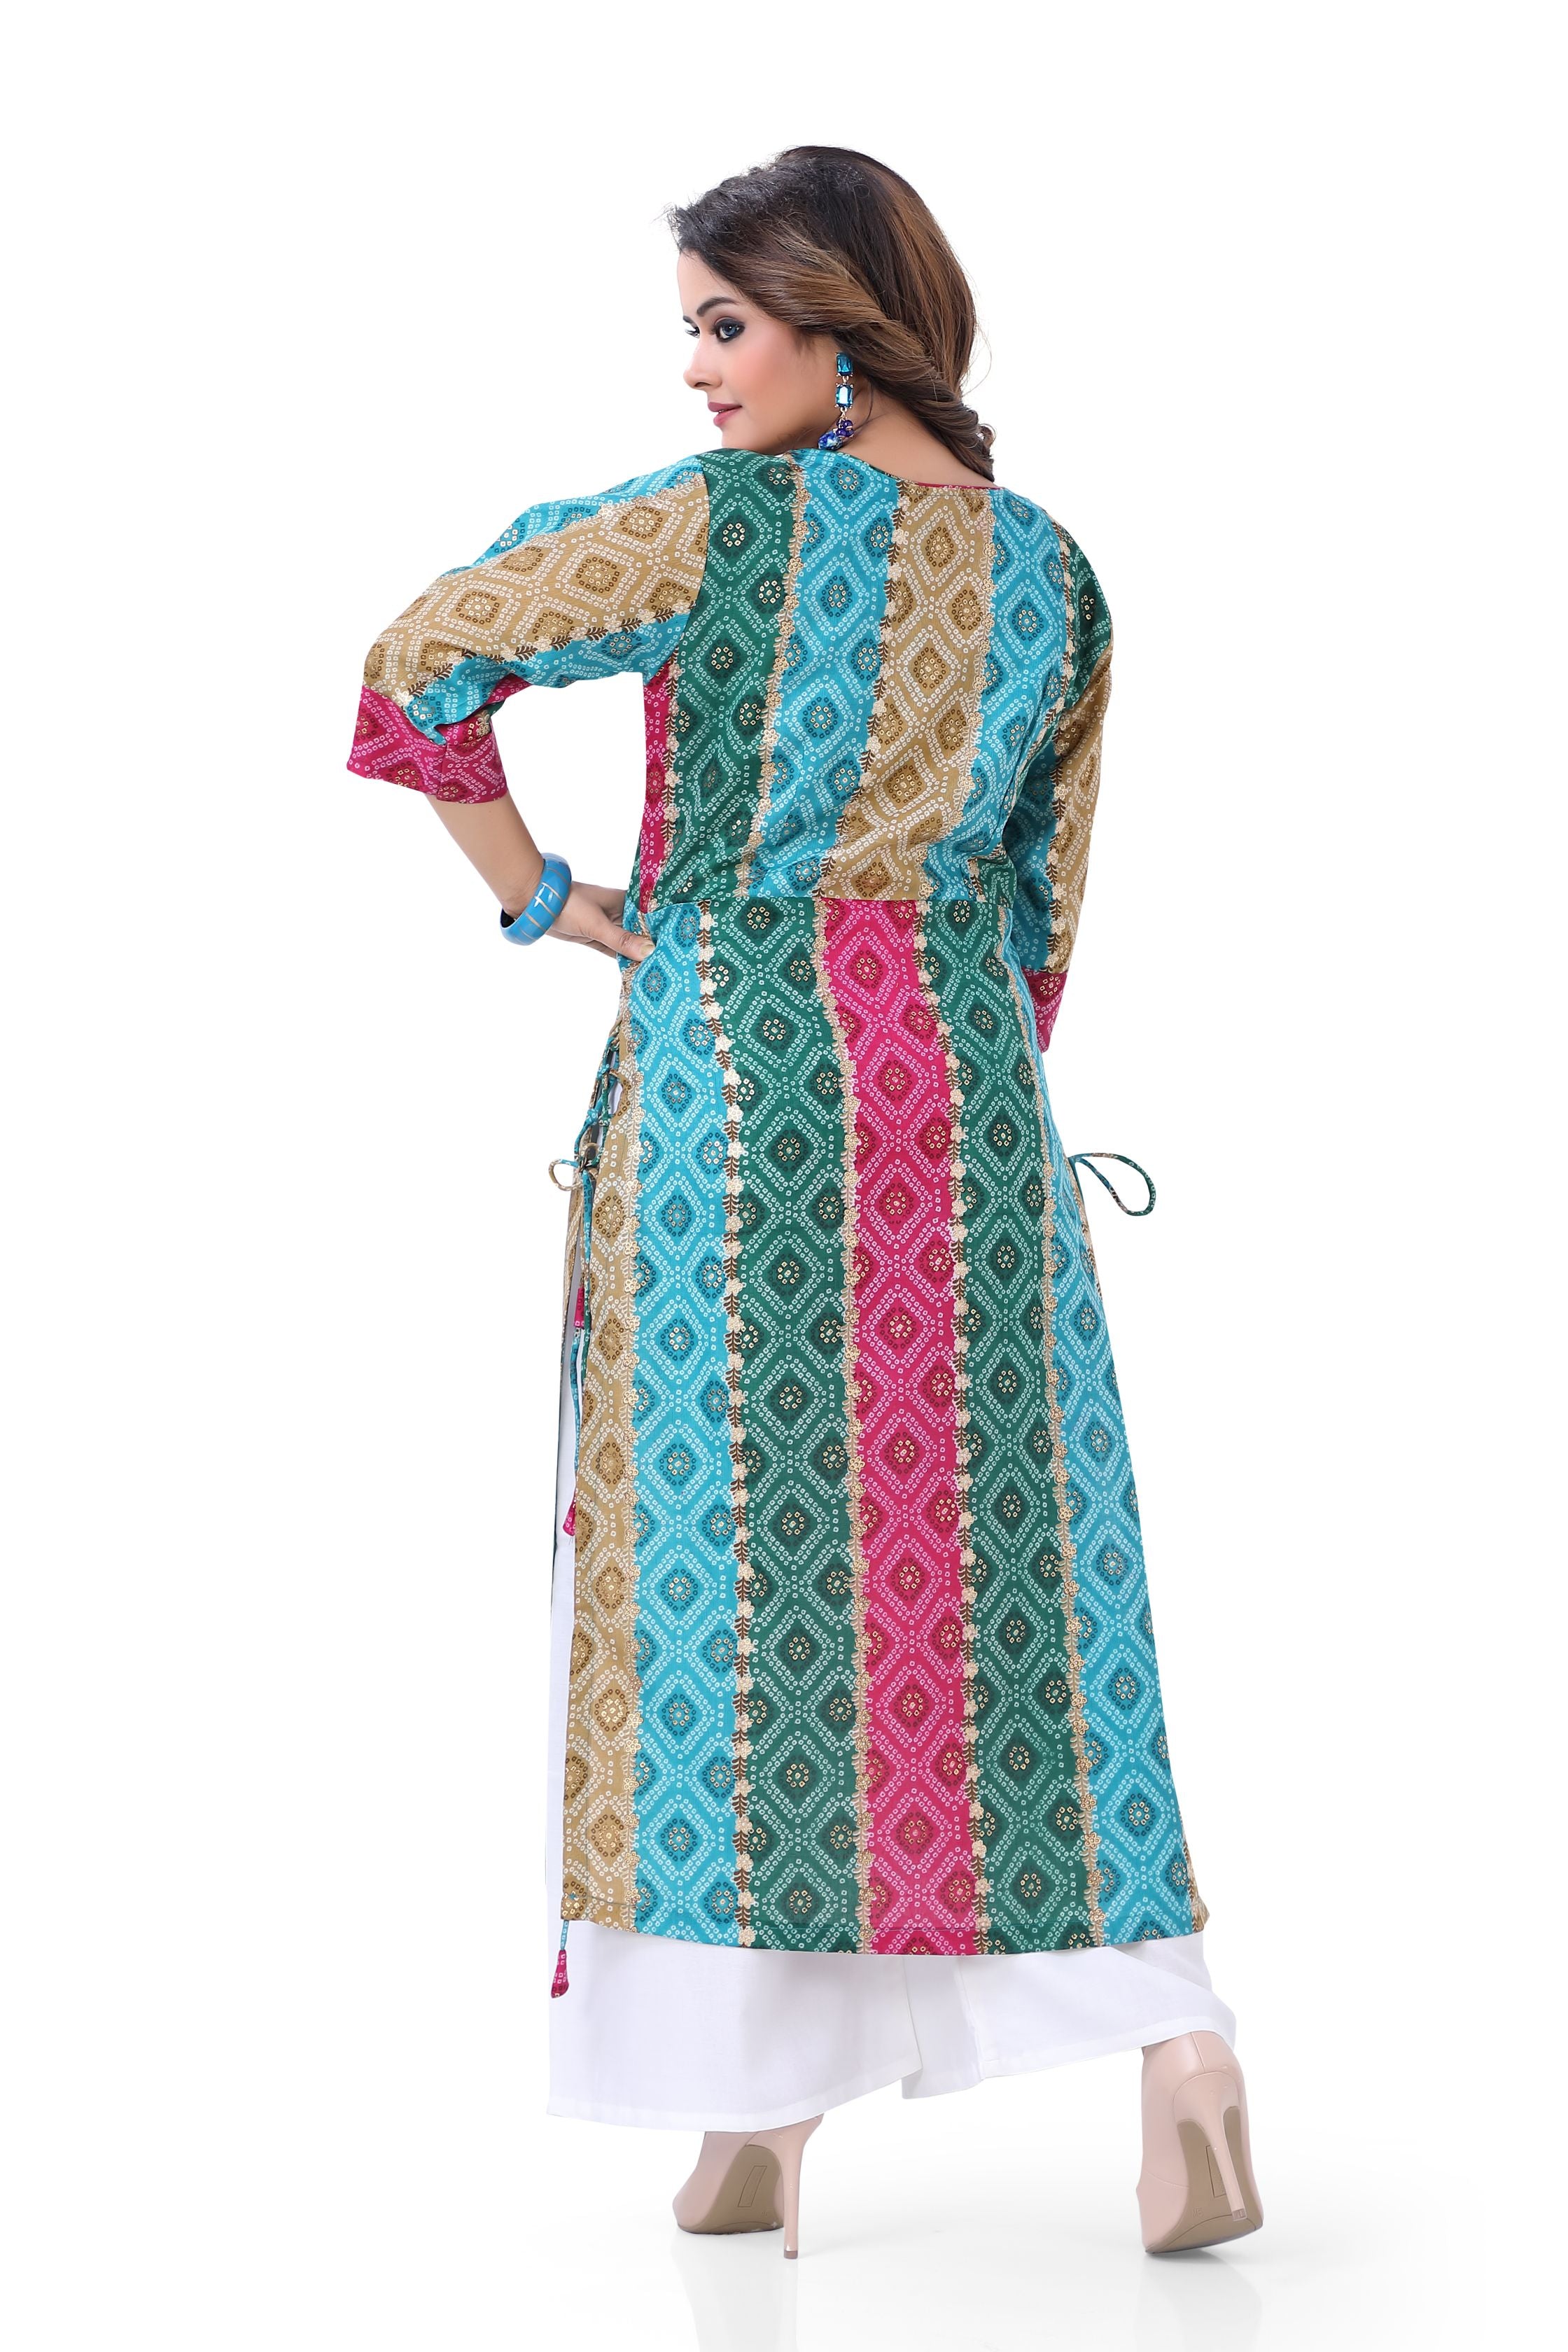 Nayra cut cotton long Kurti top in Multi Colour Bandhani print – Dulhan  Exclusives